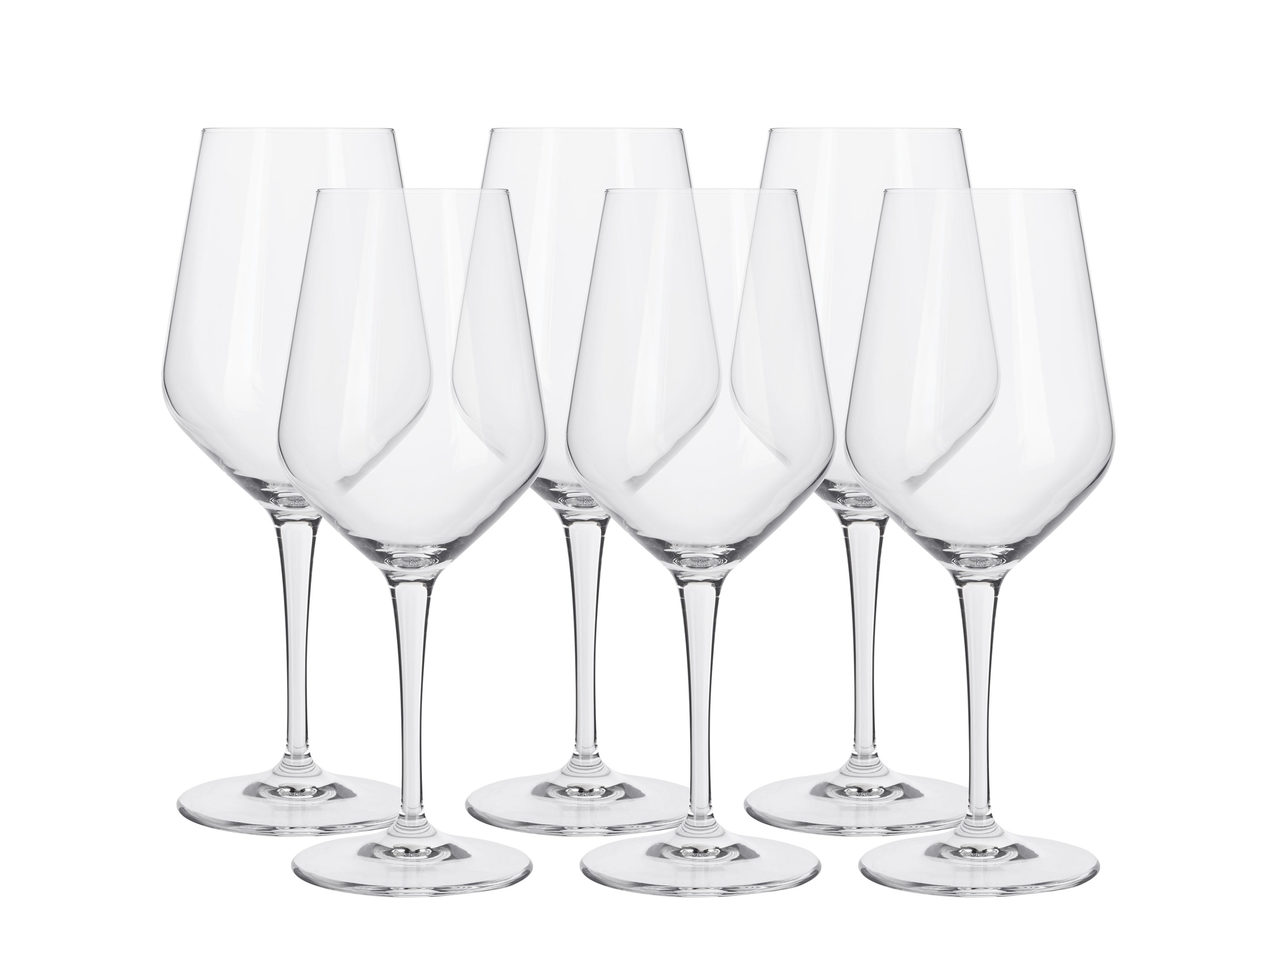 Pahare din cristal pentru vin roșu / vin alb / șampanie, 6 bucăți